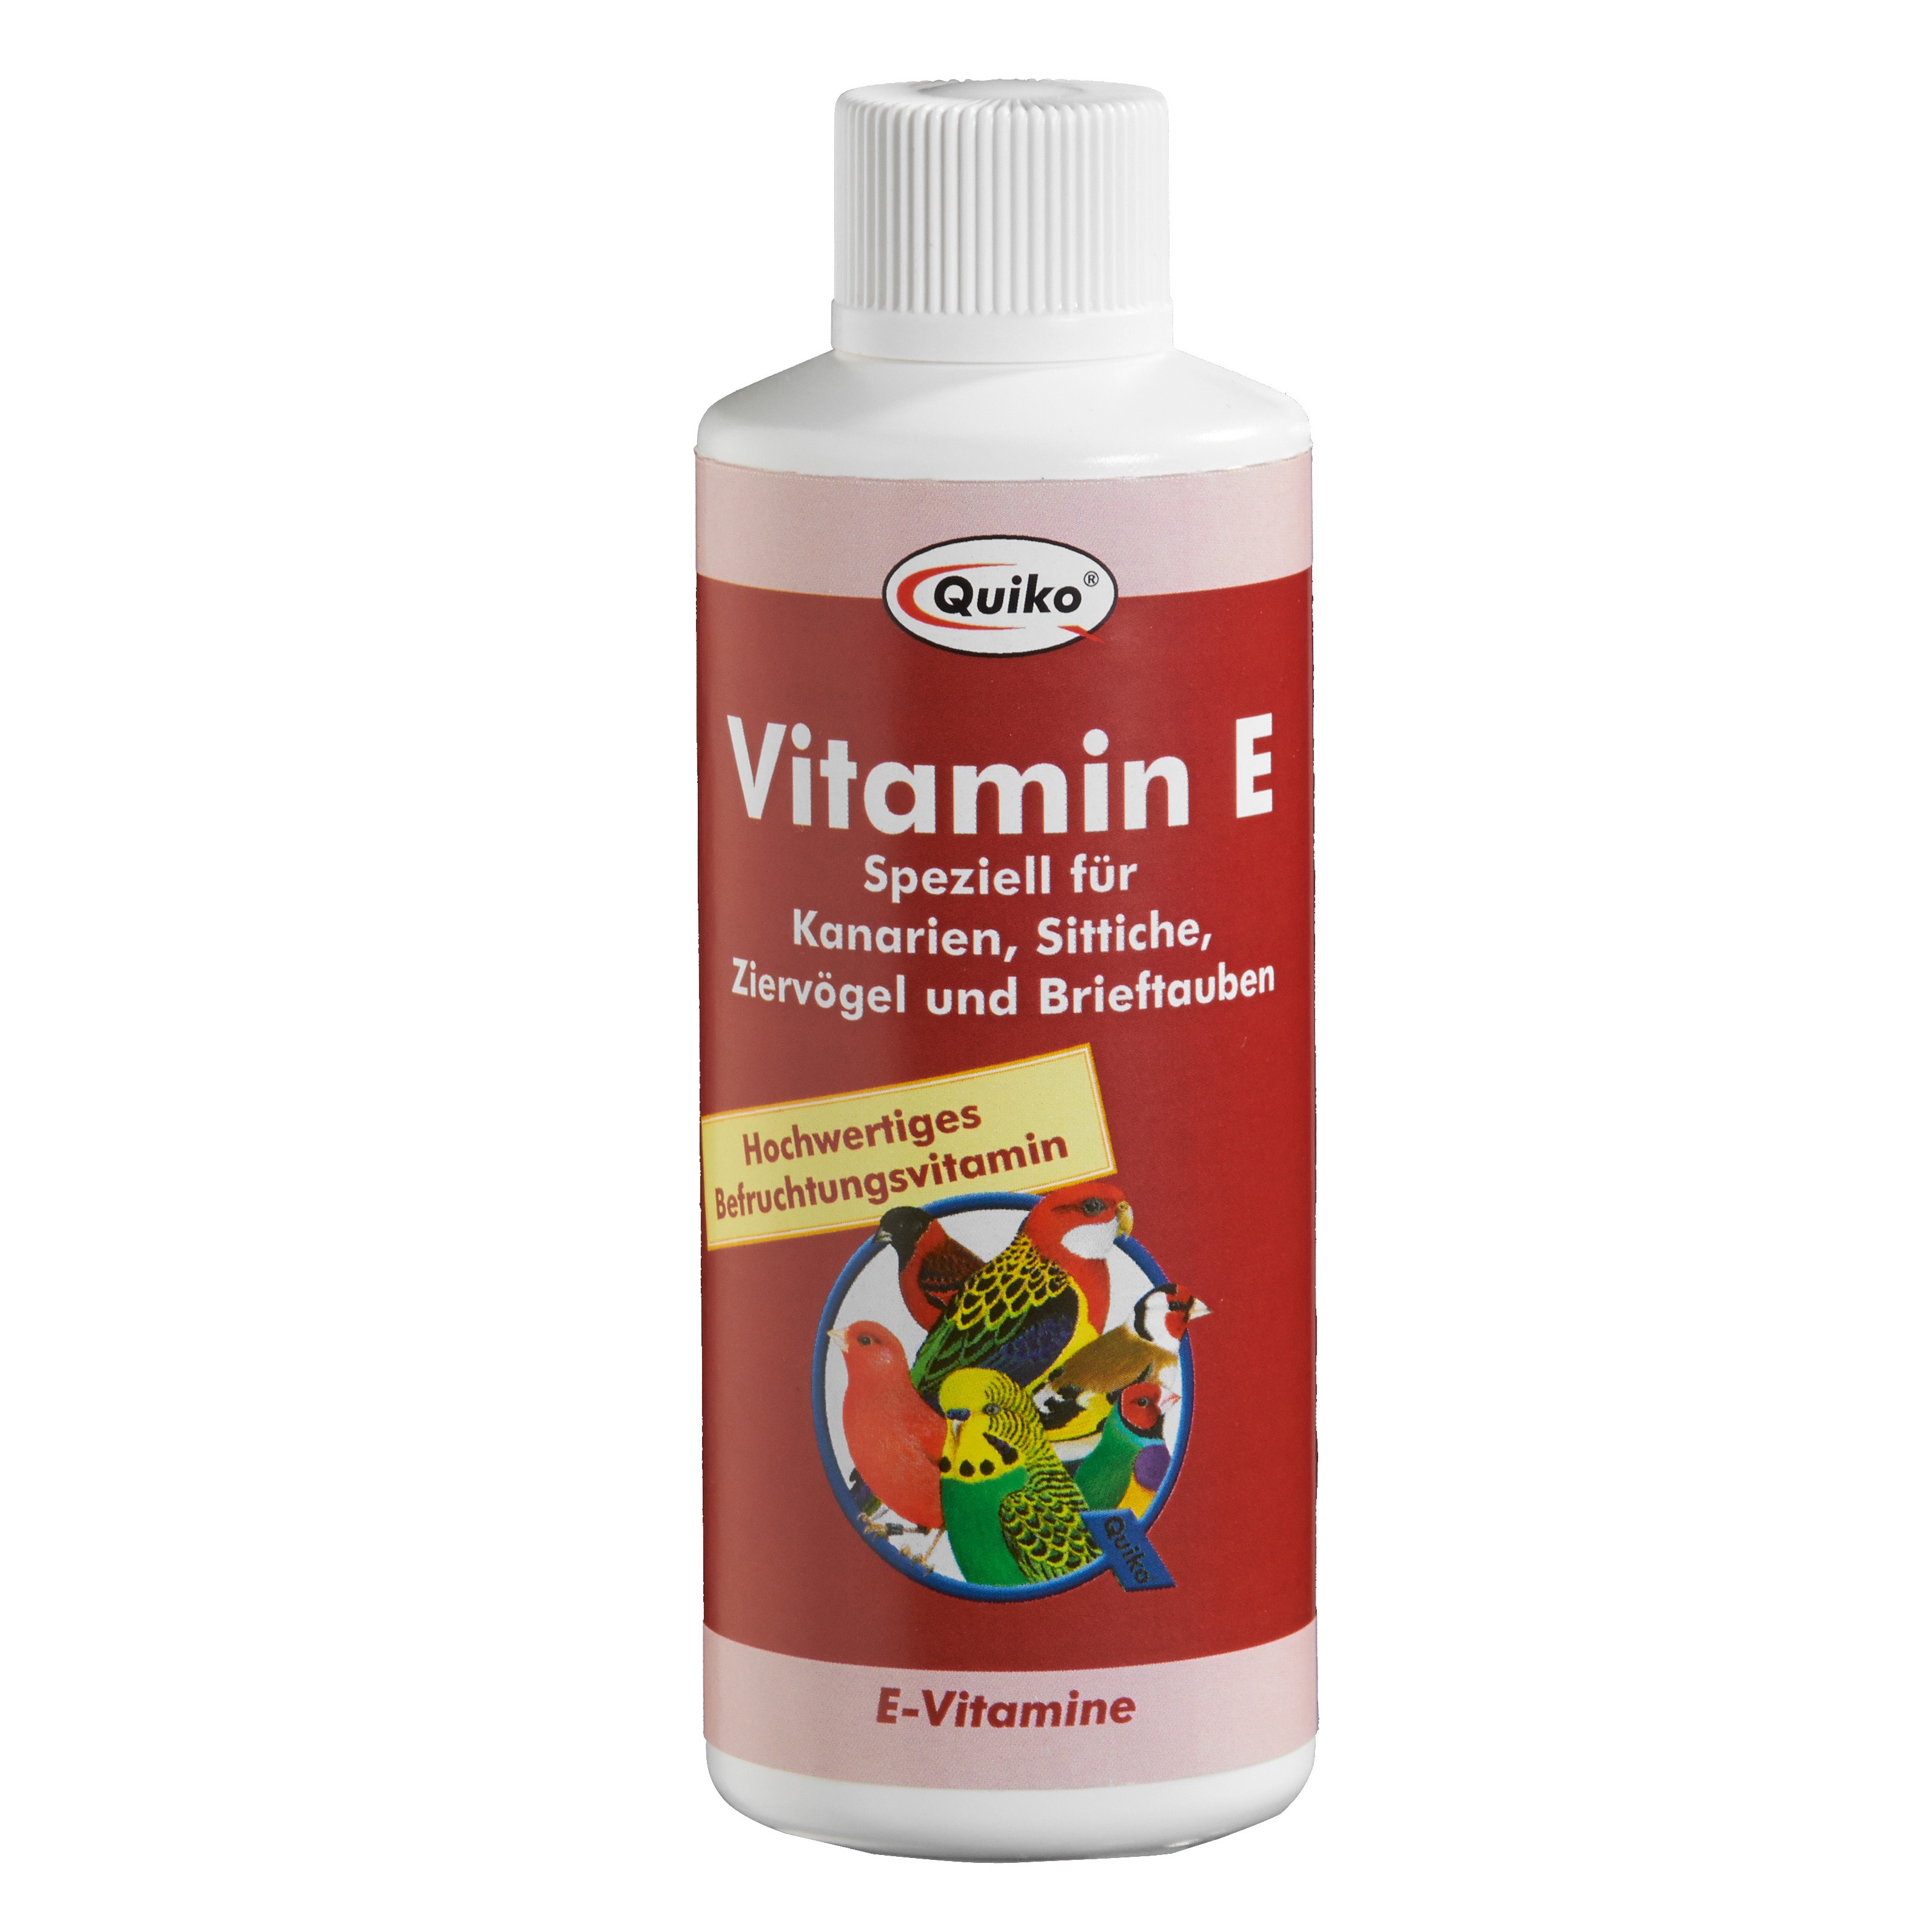 Quiko Vitamin E flüssig jetzt günstig online kaufen ᐅ HOHA.at